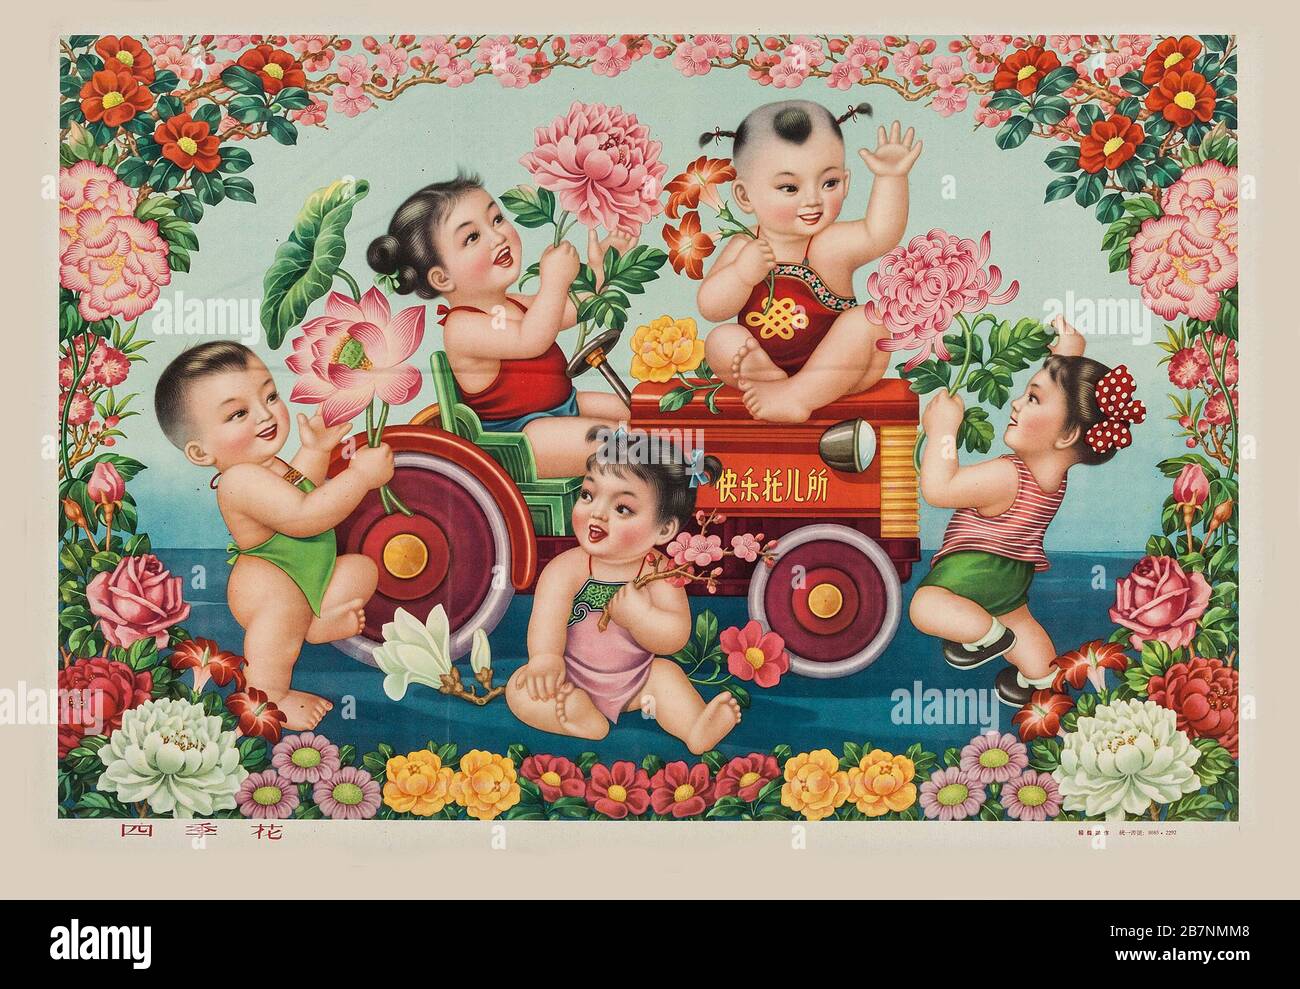 Chinesisches Neujahr, 1950er Jahre. Private Sammlung. Stockfoto